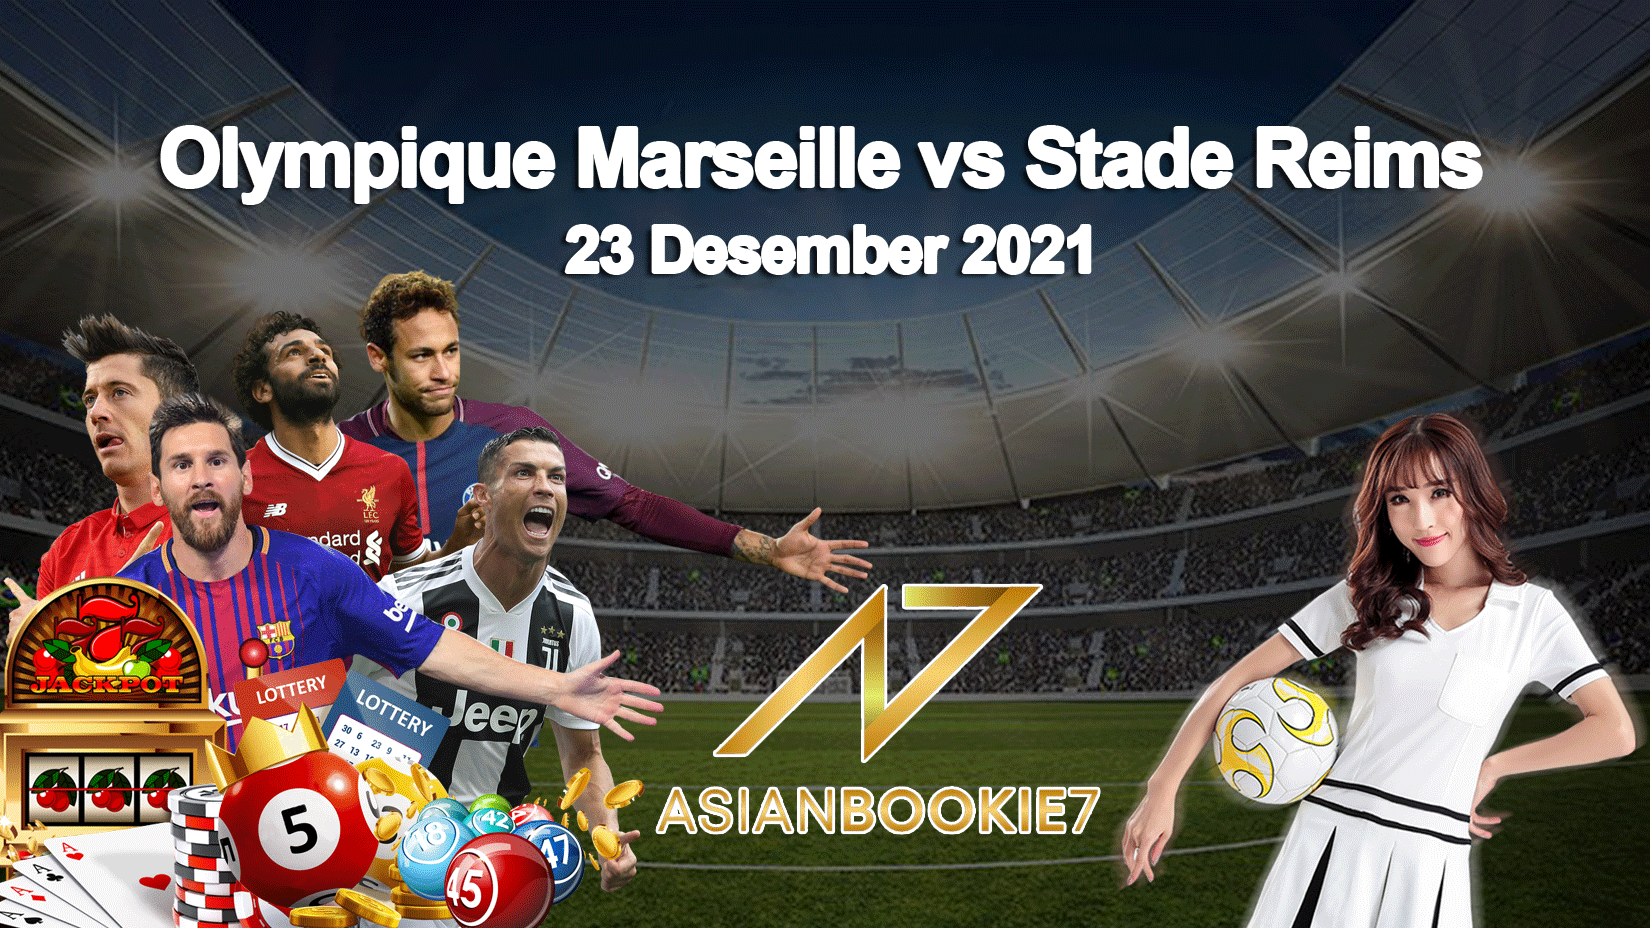 Prediksi Olympique Marseille vs Stade Reims 23 Desember 2021